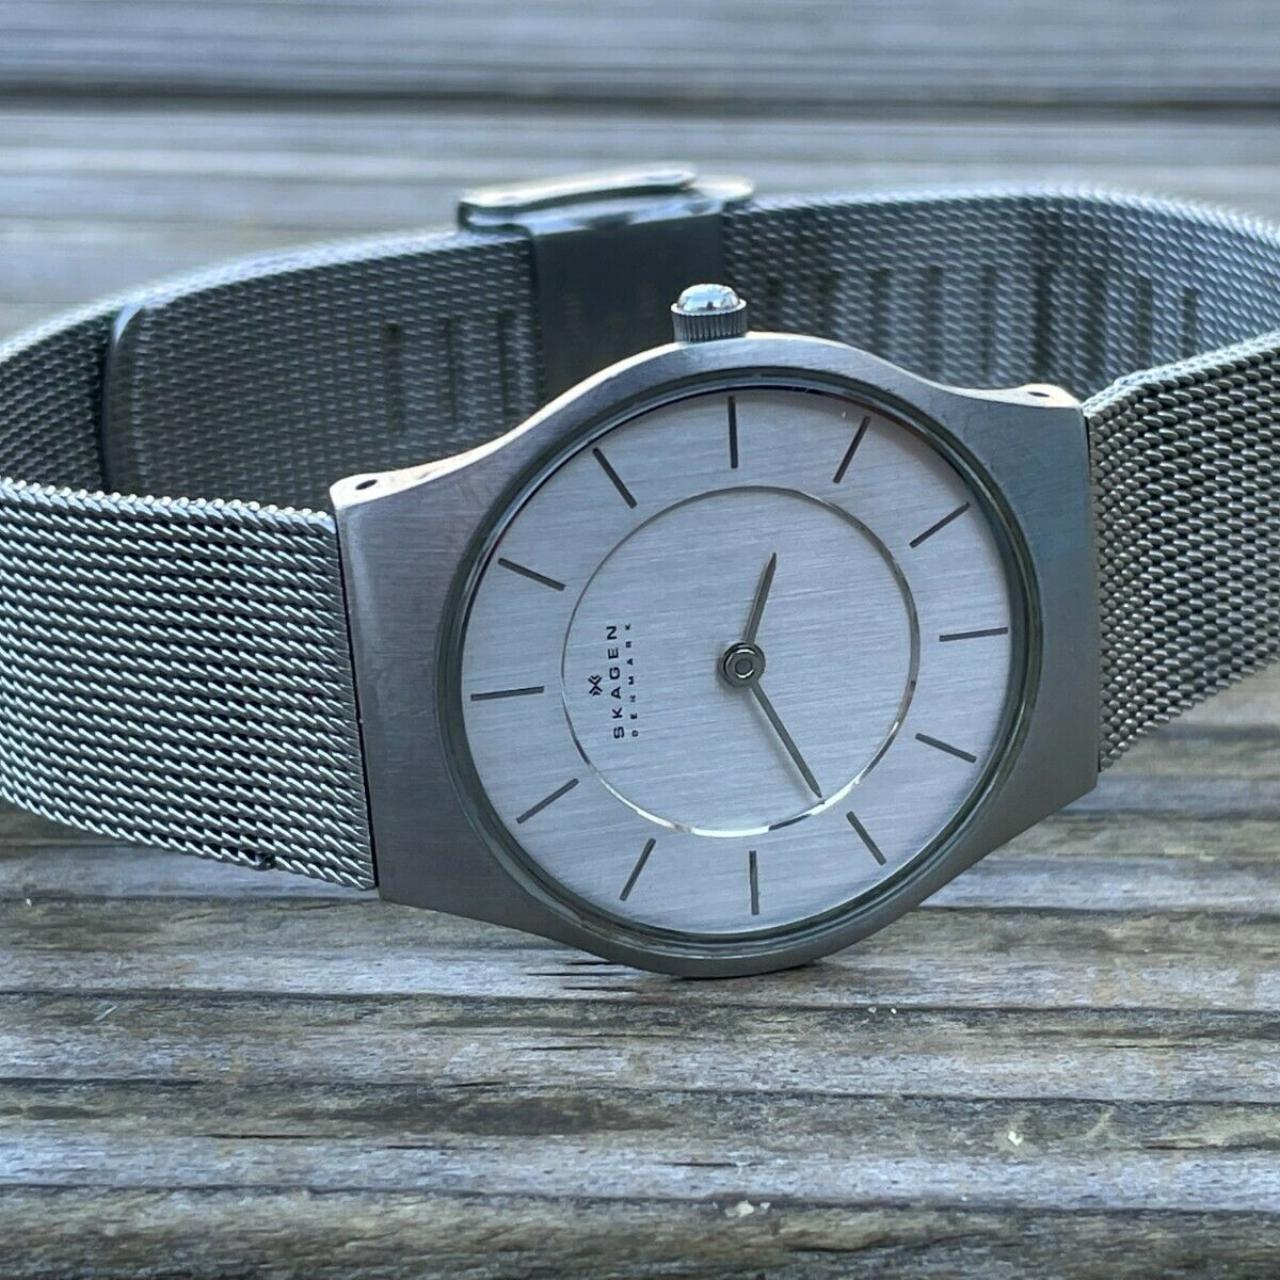 Product Image 2 - Skagen Denmark Women Wrist Watch